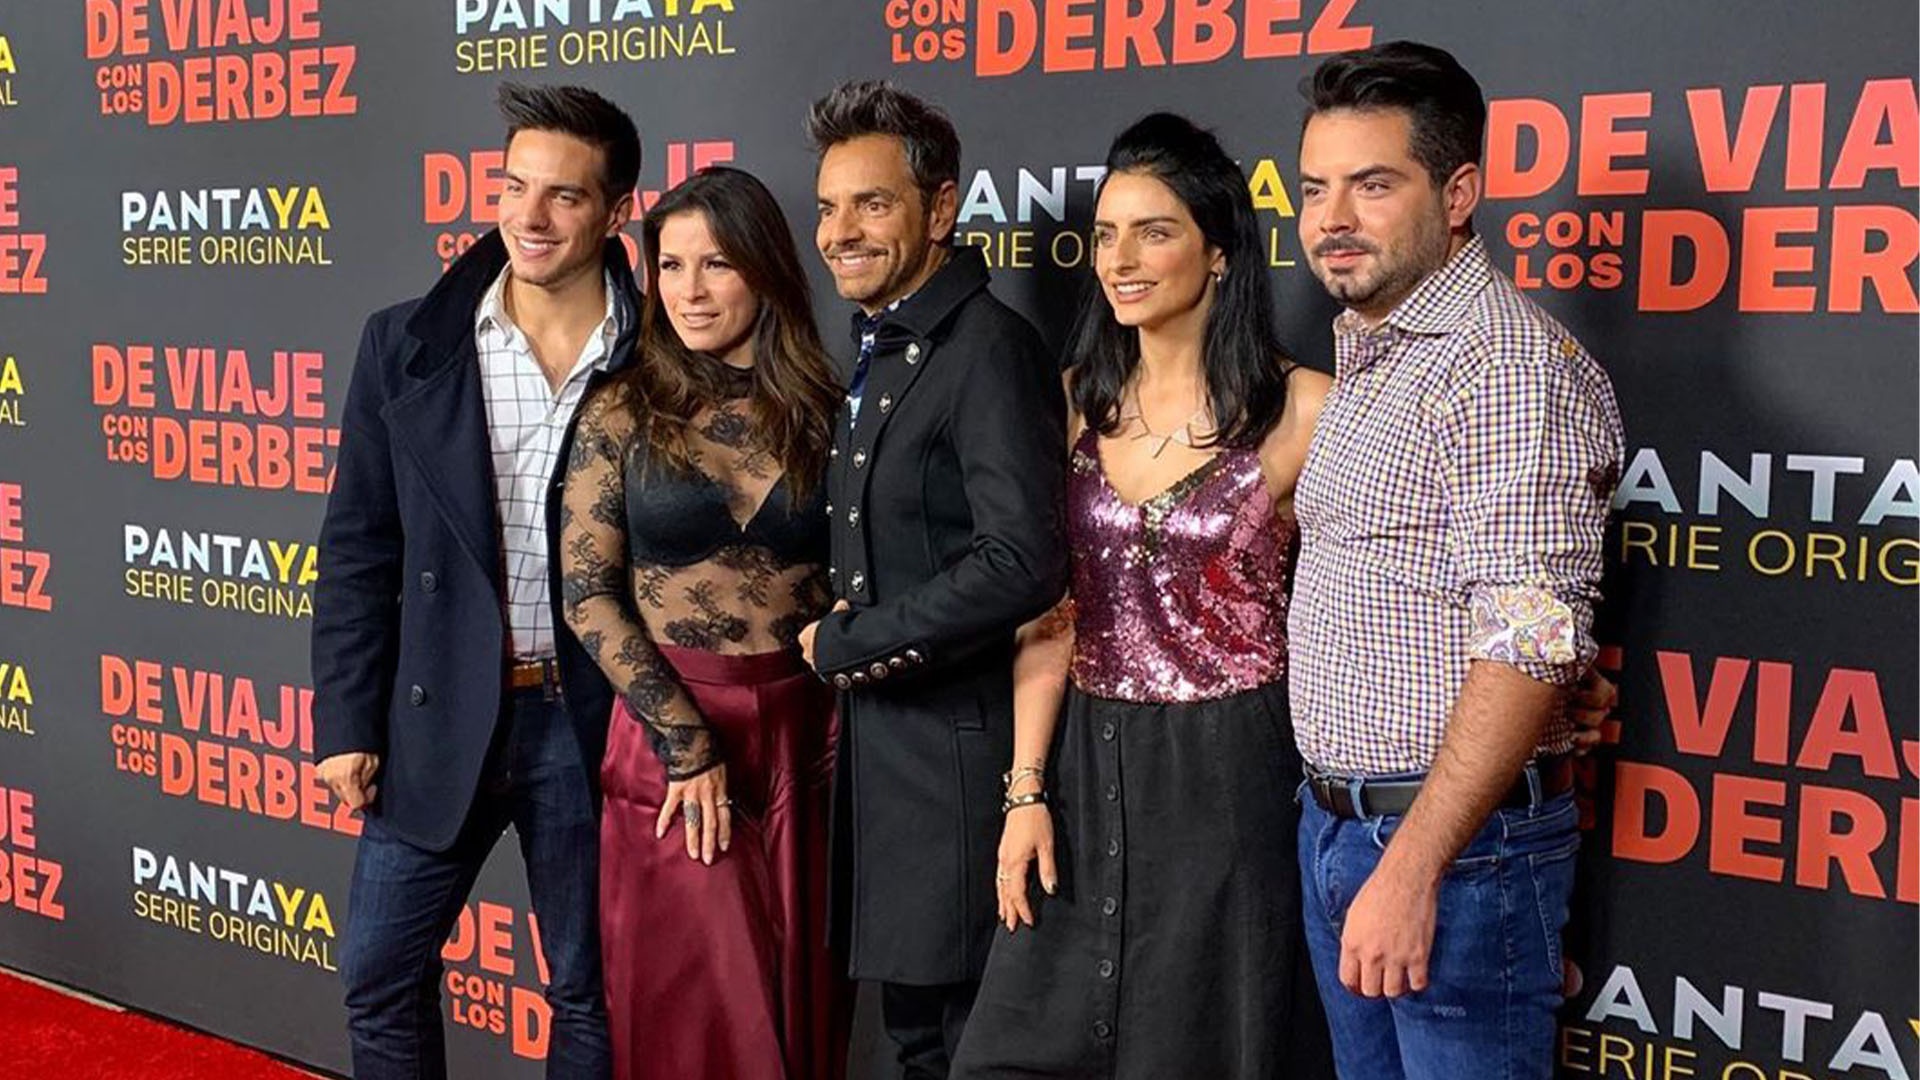 El reality show "De viaje con los Derbez" fue el detonante para diversas situaciones que afectaron a la familia (Foto: Instagram@ederbez)